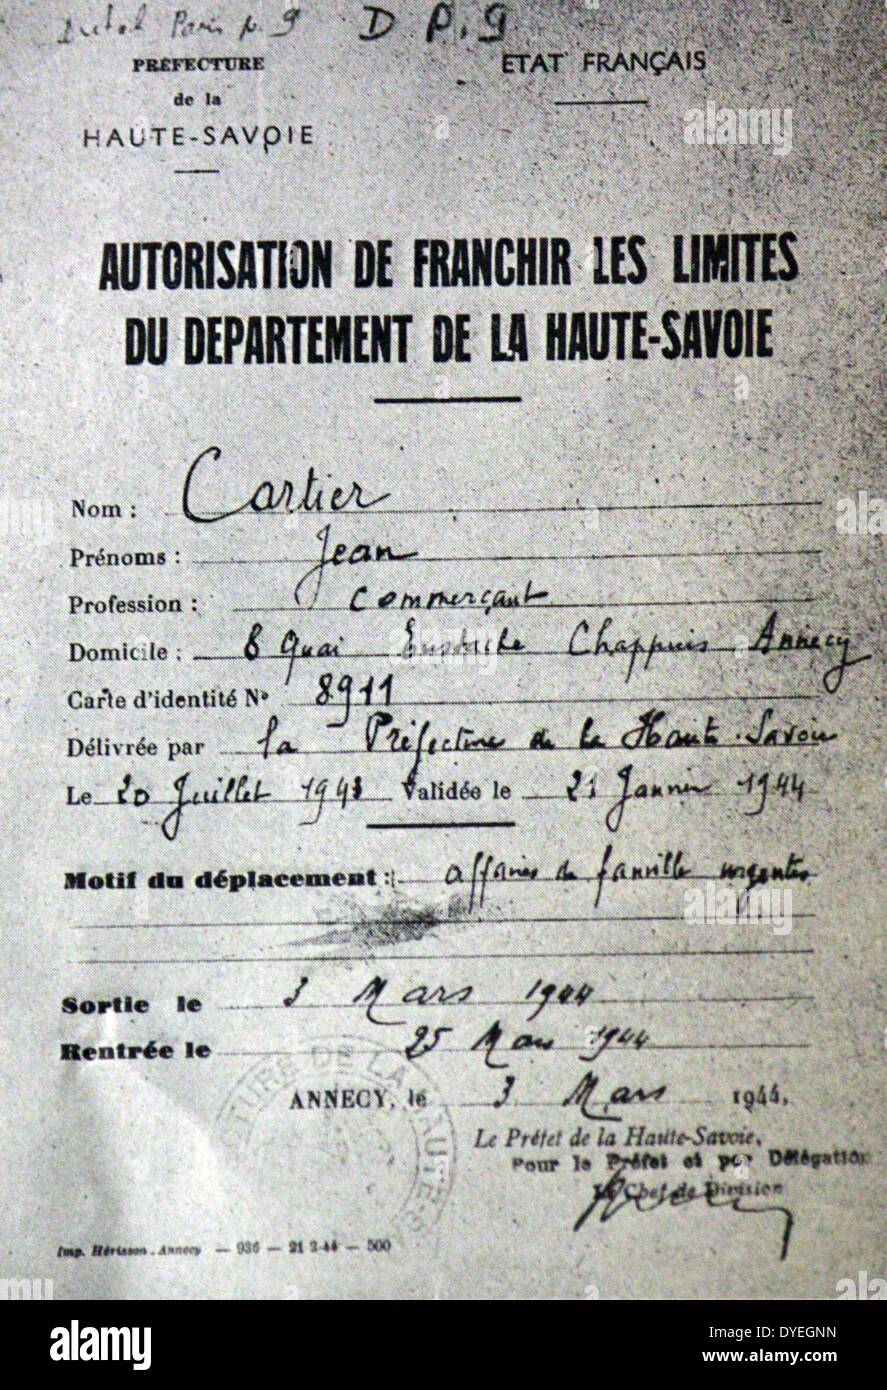 Fausse identité document utilisé comme un permis de voyage pour un réfugié pour échapper à la Suisse pendant la Seconde Guerre mondiale Banque D'Images